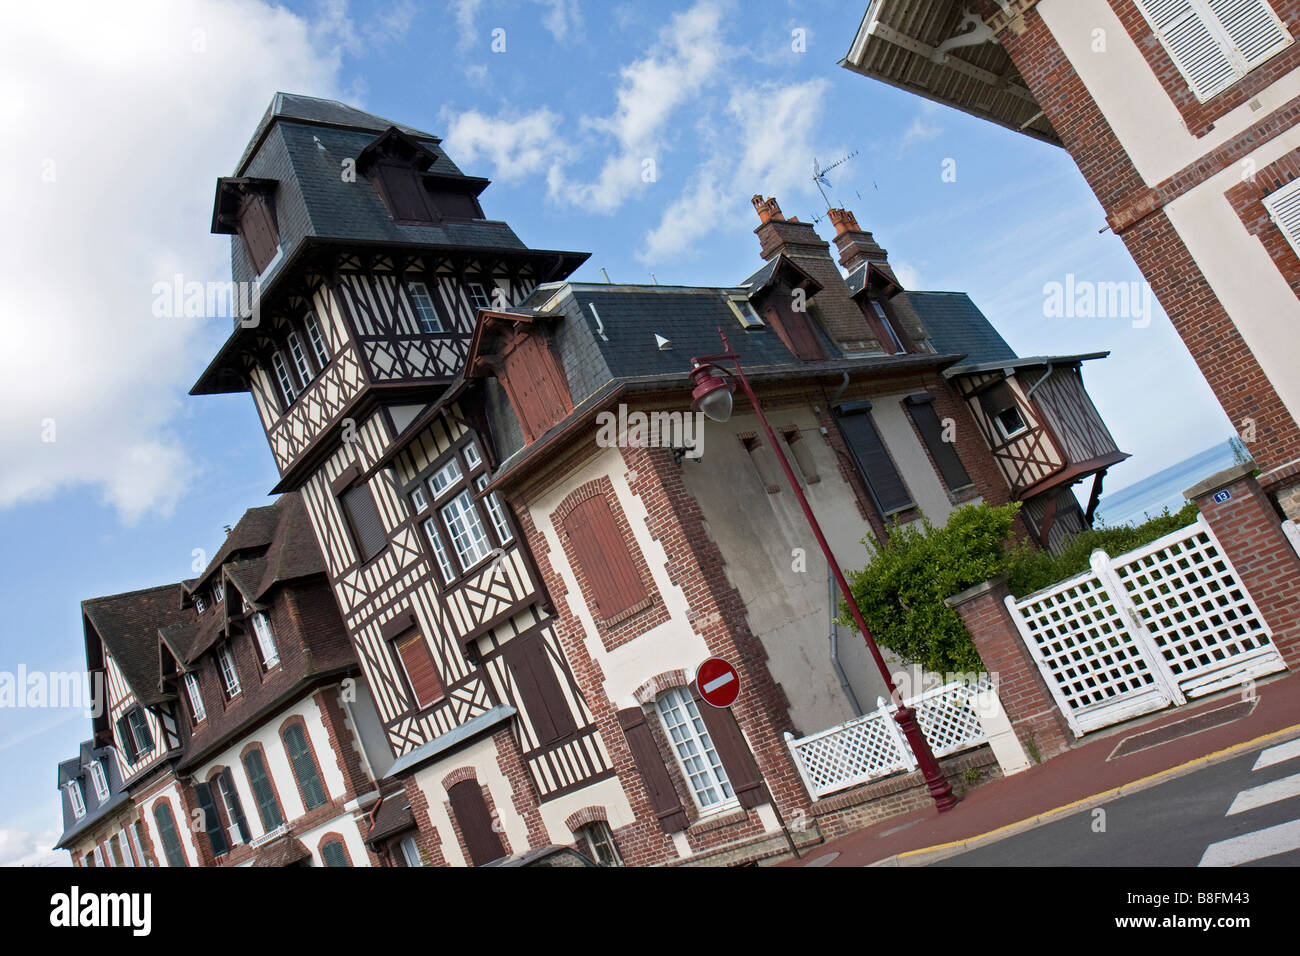 Casa tipica dalla Normandia.Maison typique de Normandie Foto Stock